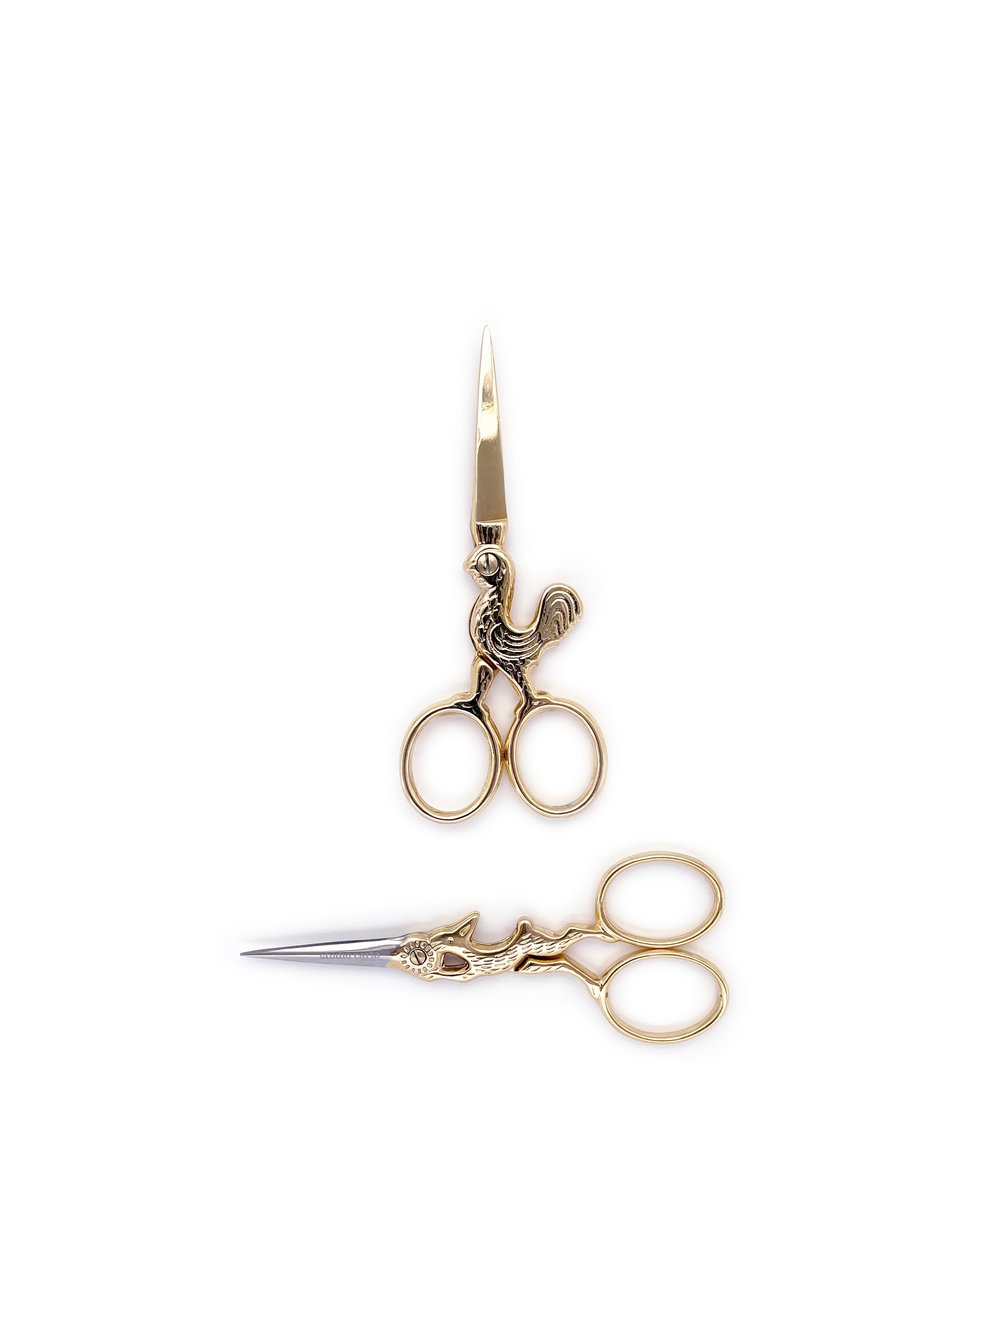 Delicate Scissors — Mr. Boddington's Studio